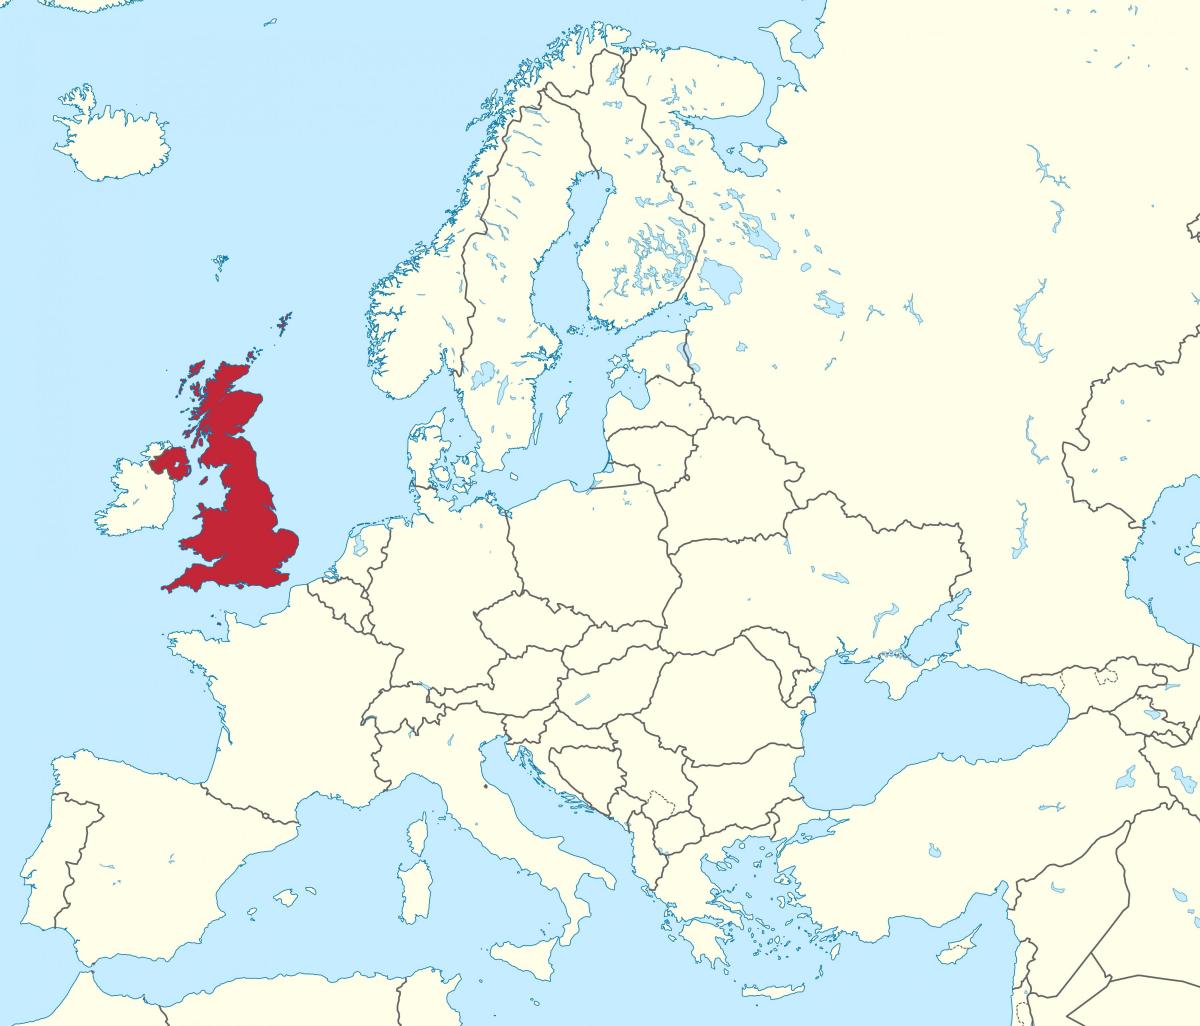 Verenigd Koninkrijk (VK) ligging op de Europa-kaart